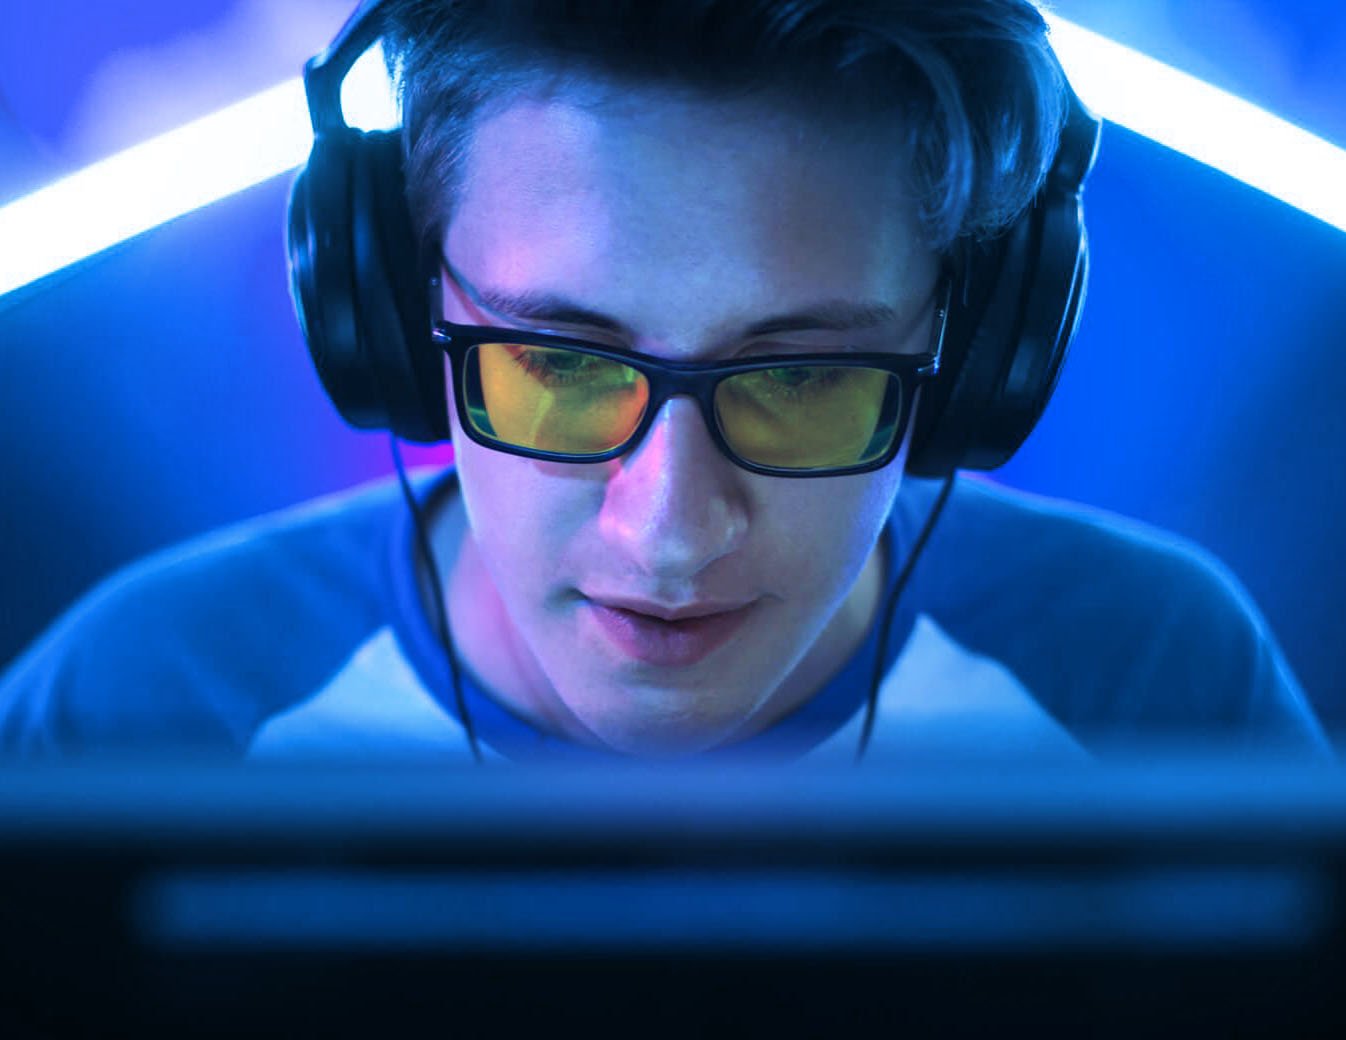 blue light gaming glasses